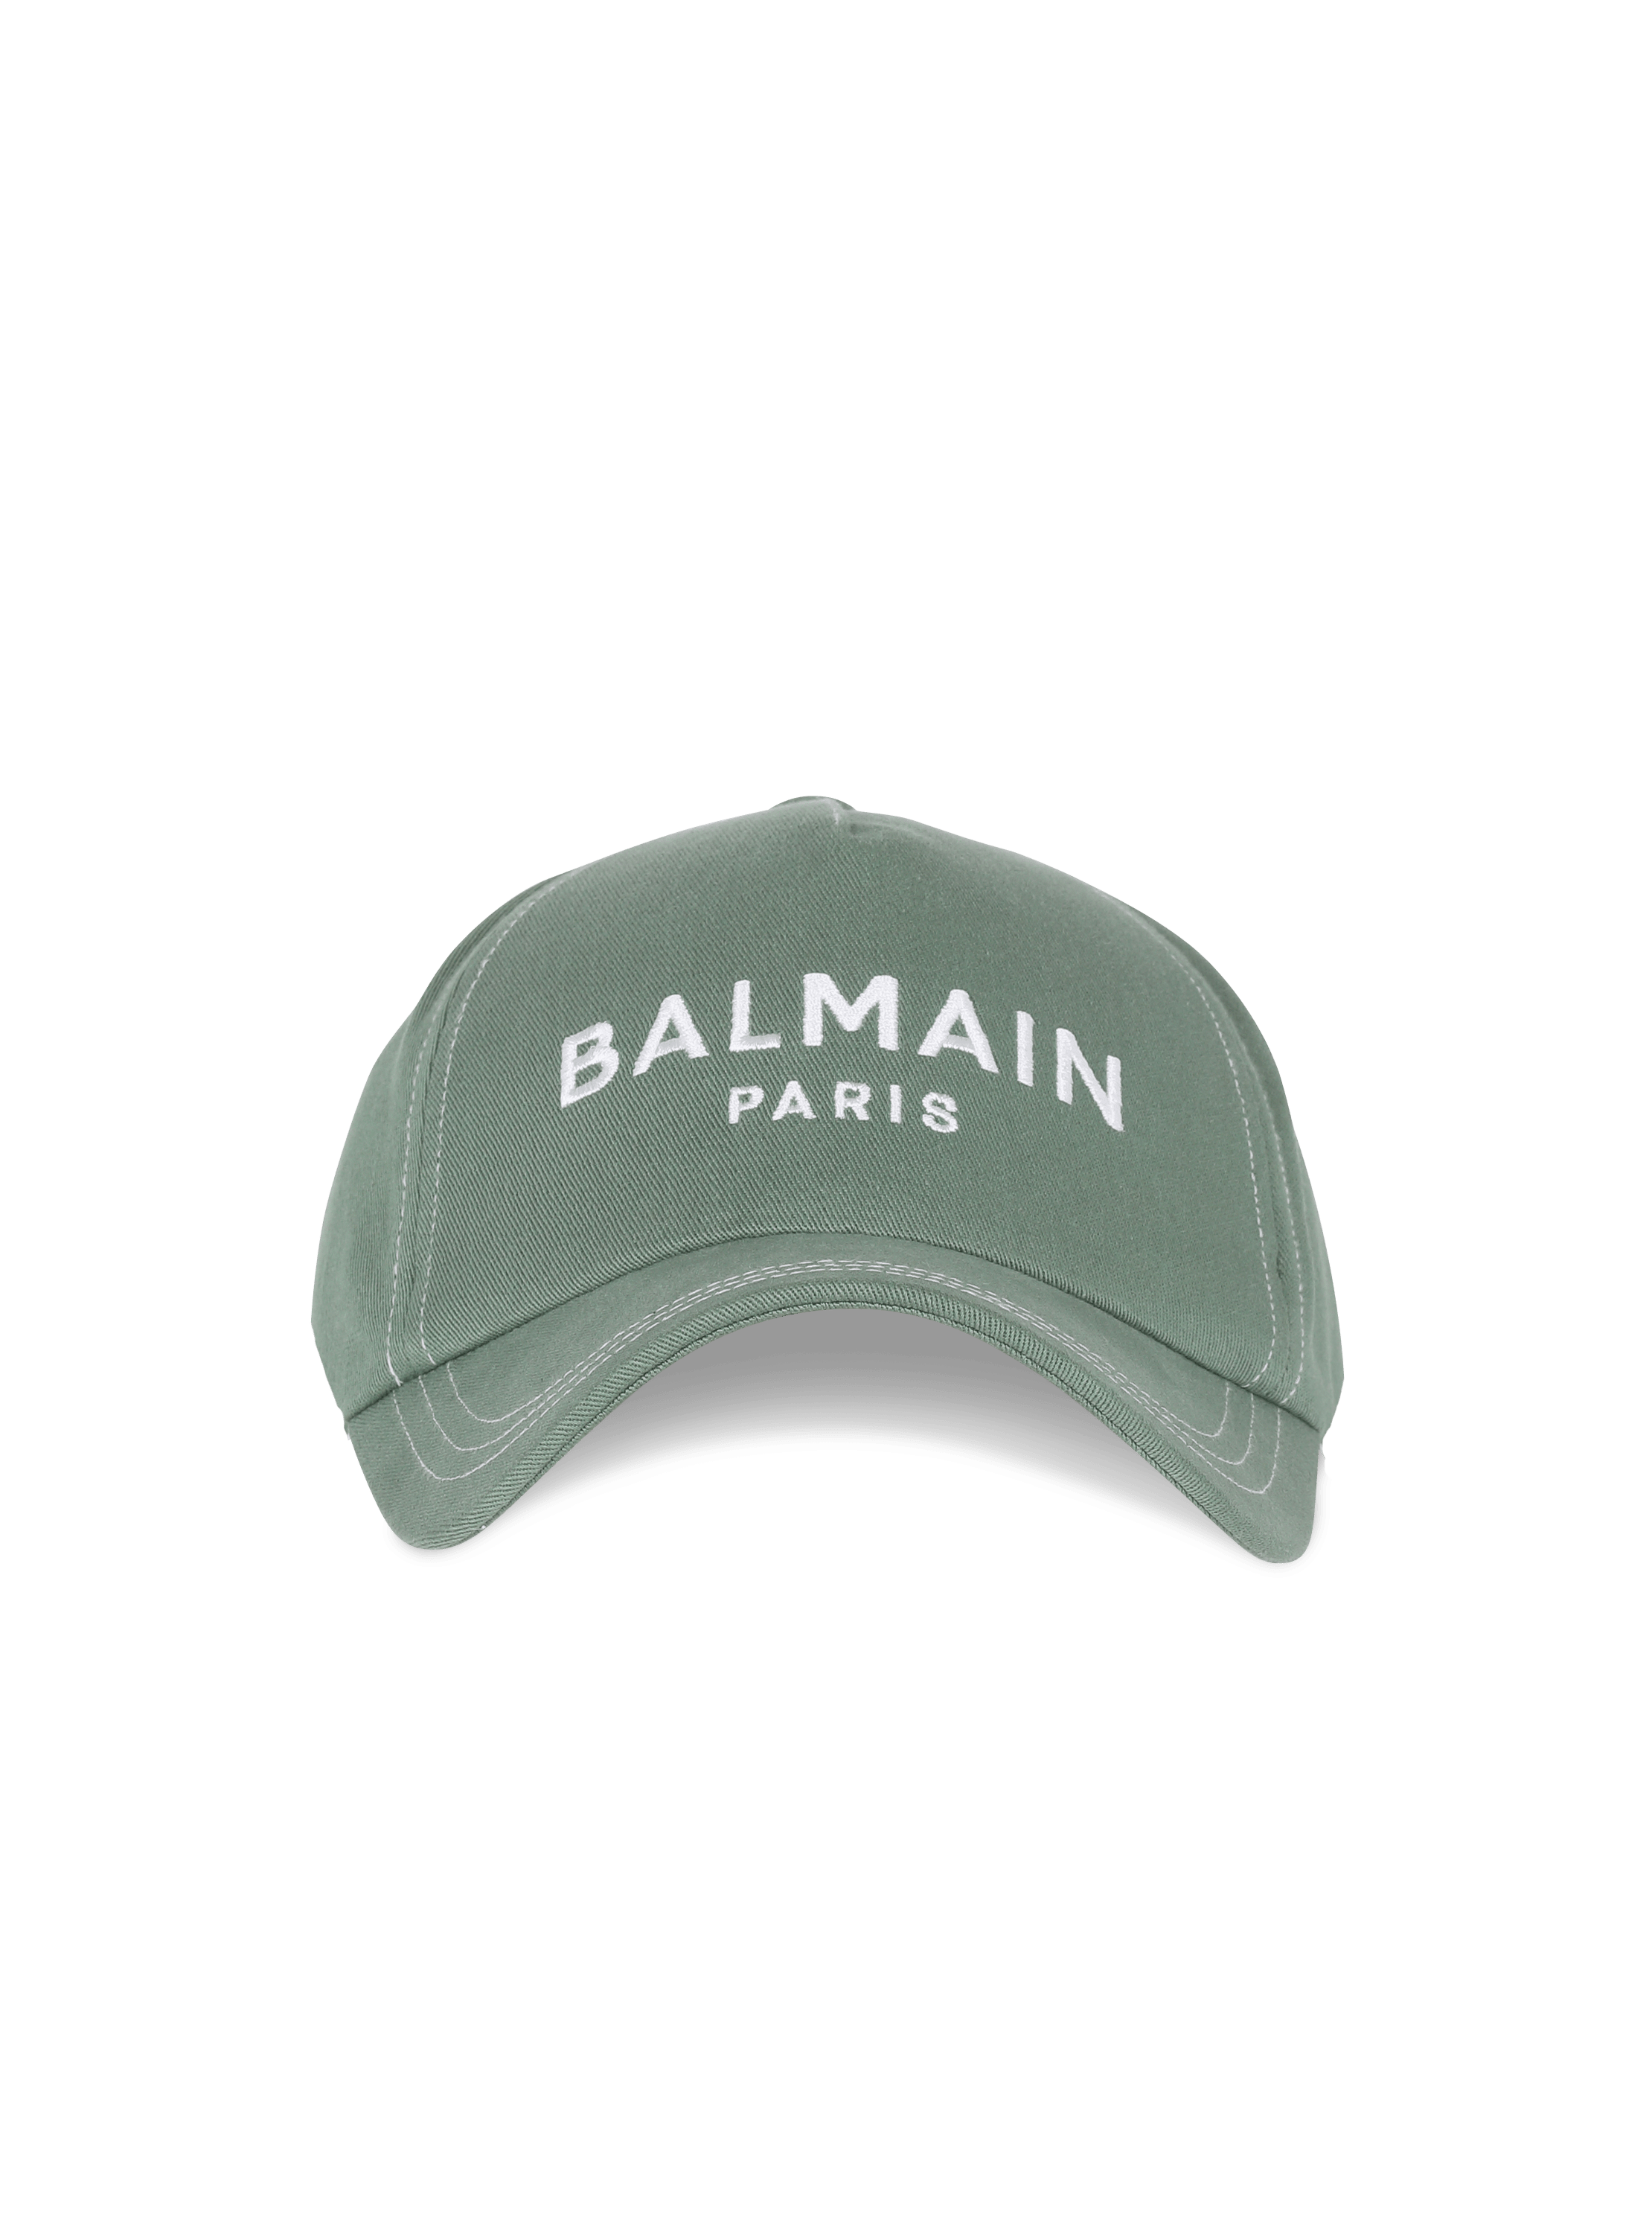 Balmain巴尔曼刺绣棉质棒球帽, green, hi-res